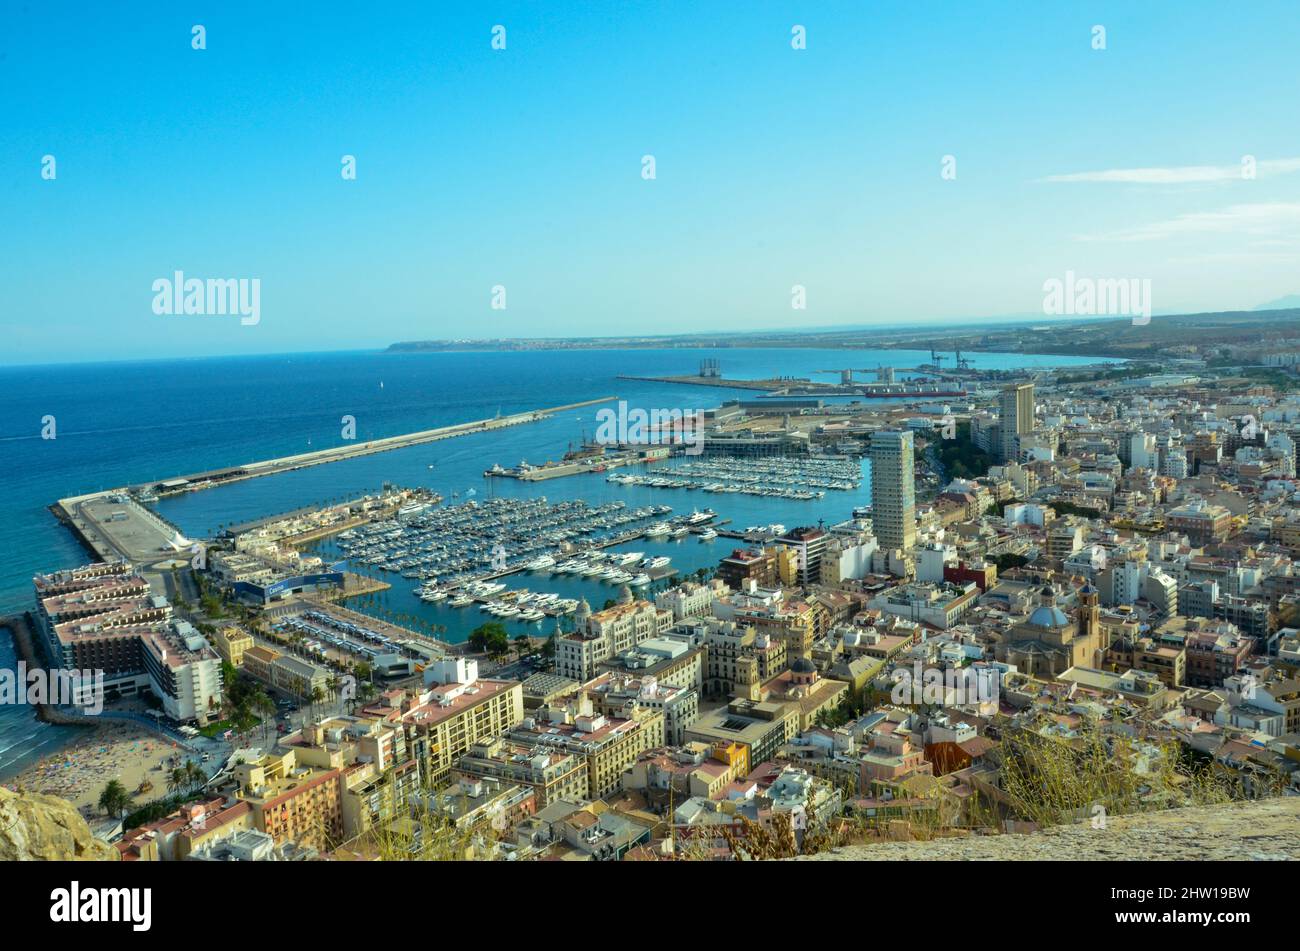 Vista desde el Castillo de Santa Bárbara hasta el puerto de Alicante y el Mar Mediterráneo con muchos veleros y barcos en la bahía Foto de stock